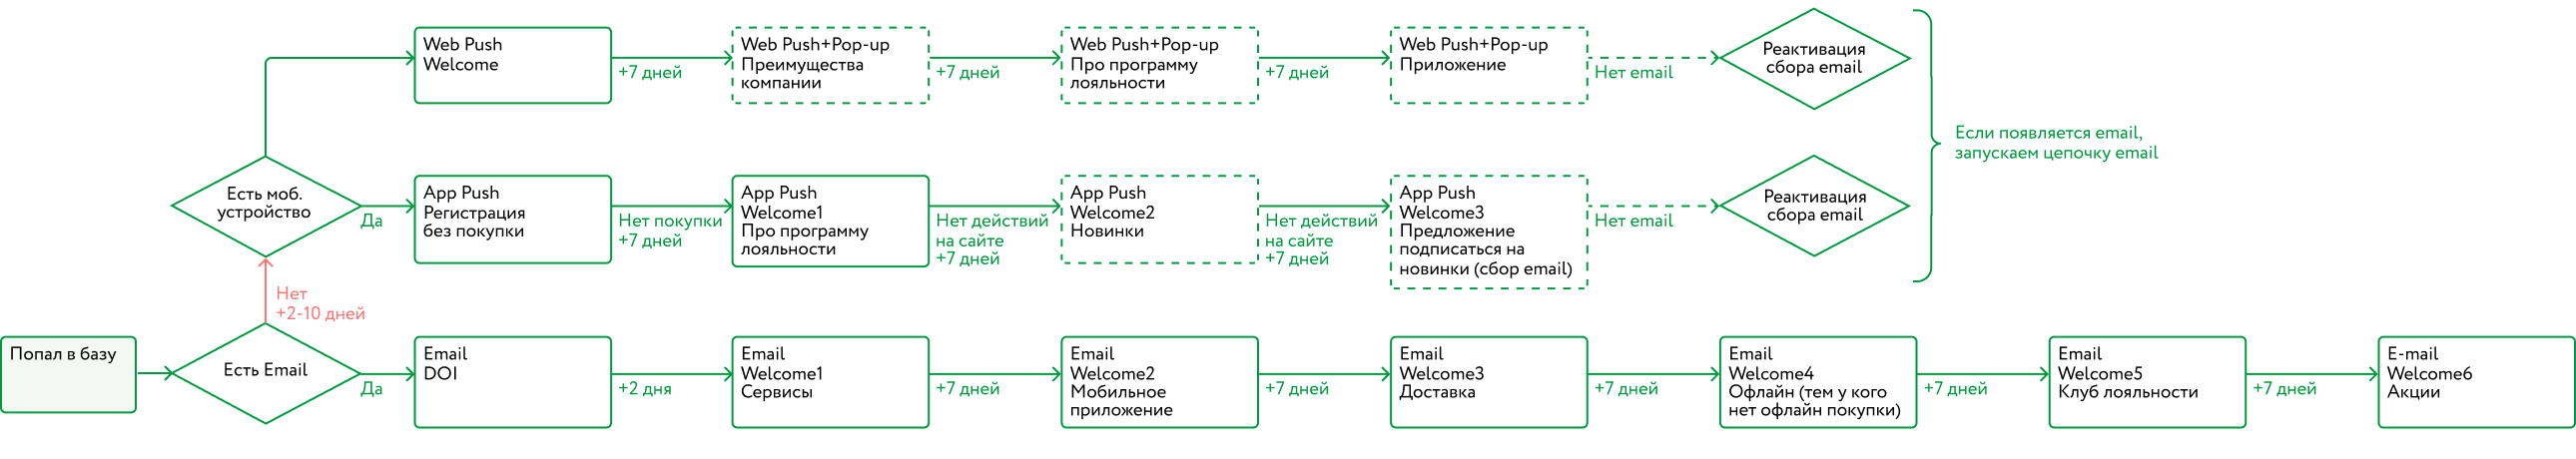 Пример карты коммуникаций по email, мобильным и веб-пушам